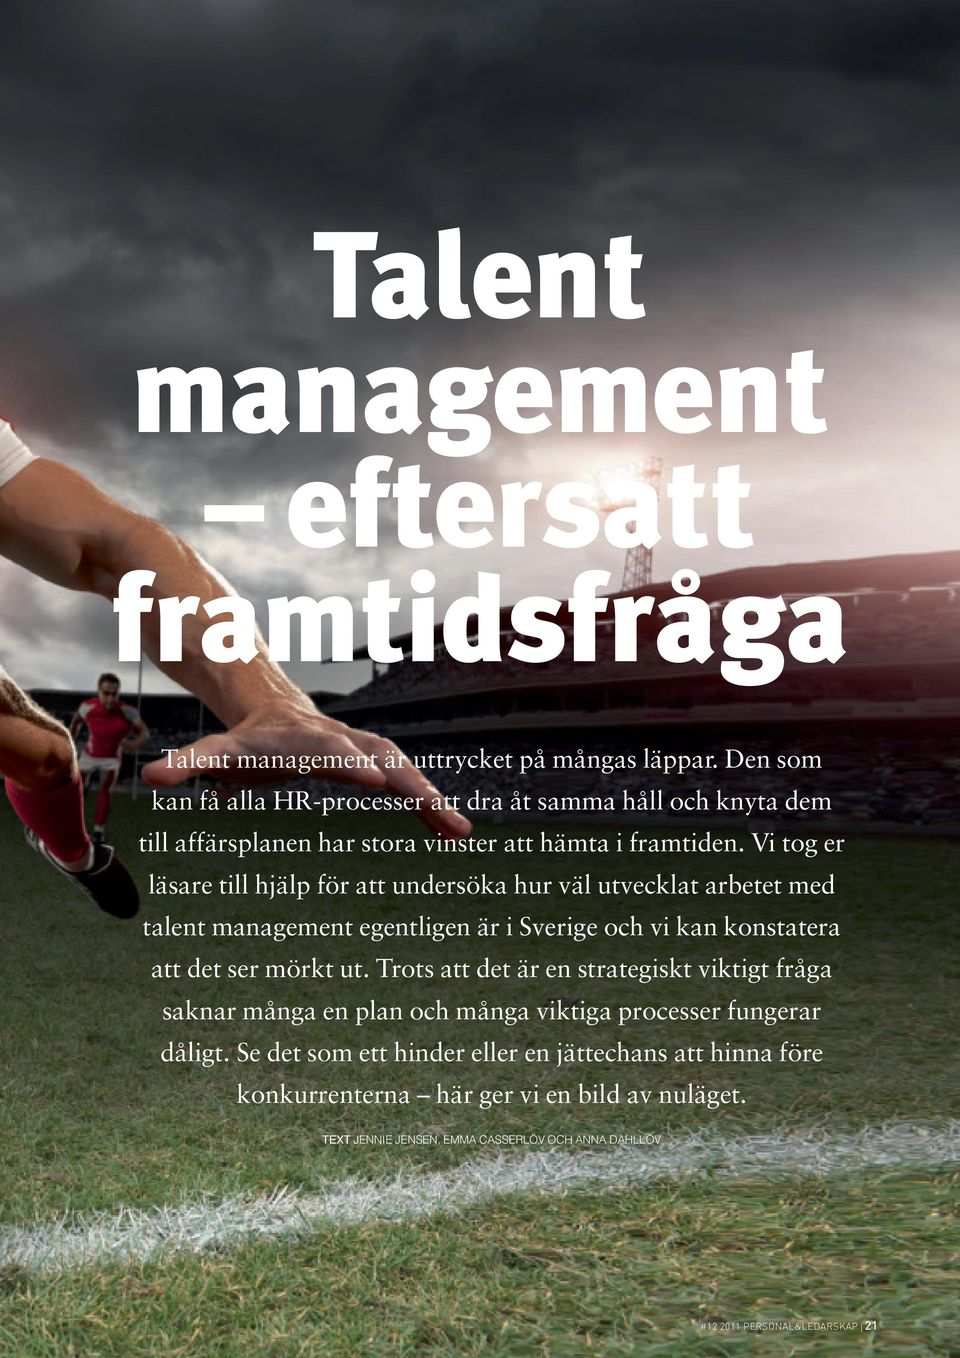 Vi tog er läsare till hjälp för att undersöka hur väl utvecklat arbetet med talent management egentligen är i Sverige och vi kan konstatera att det ser mörkt ut.